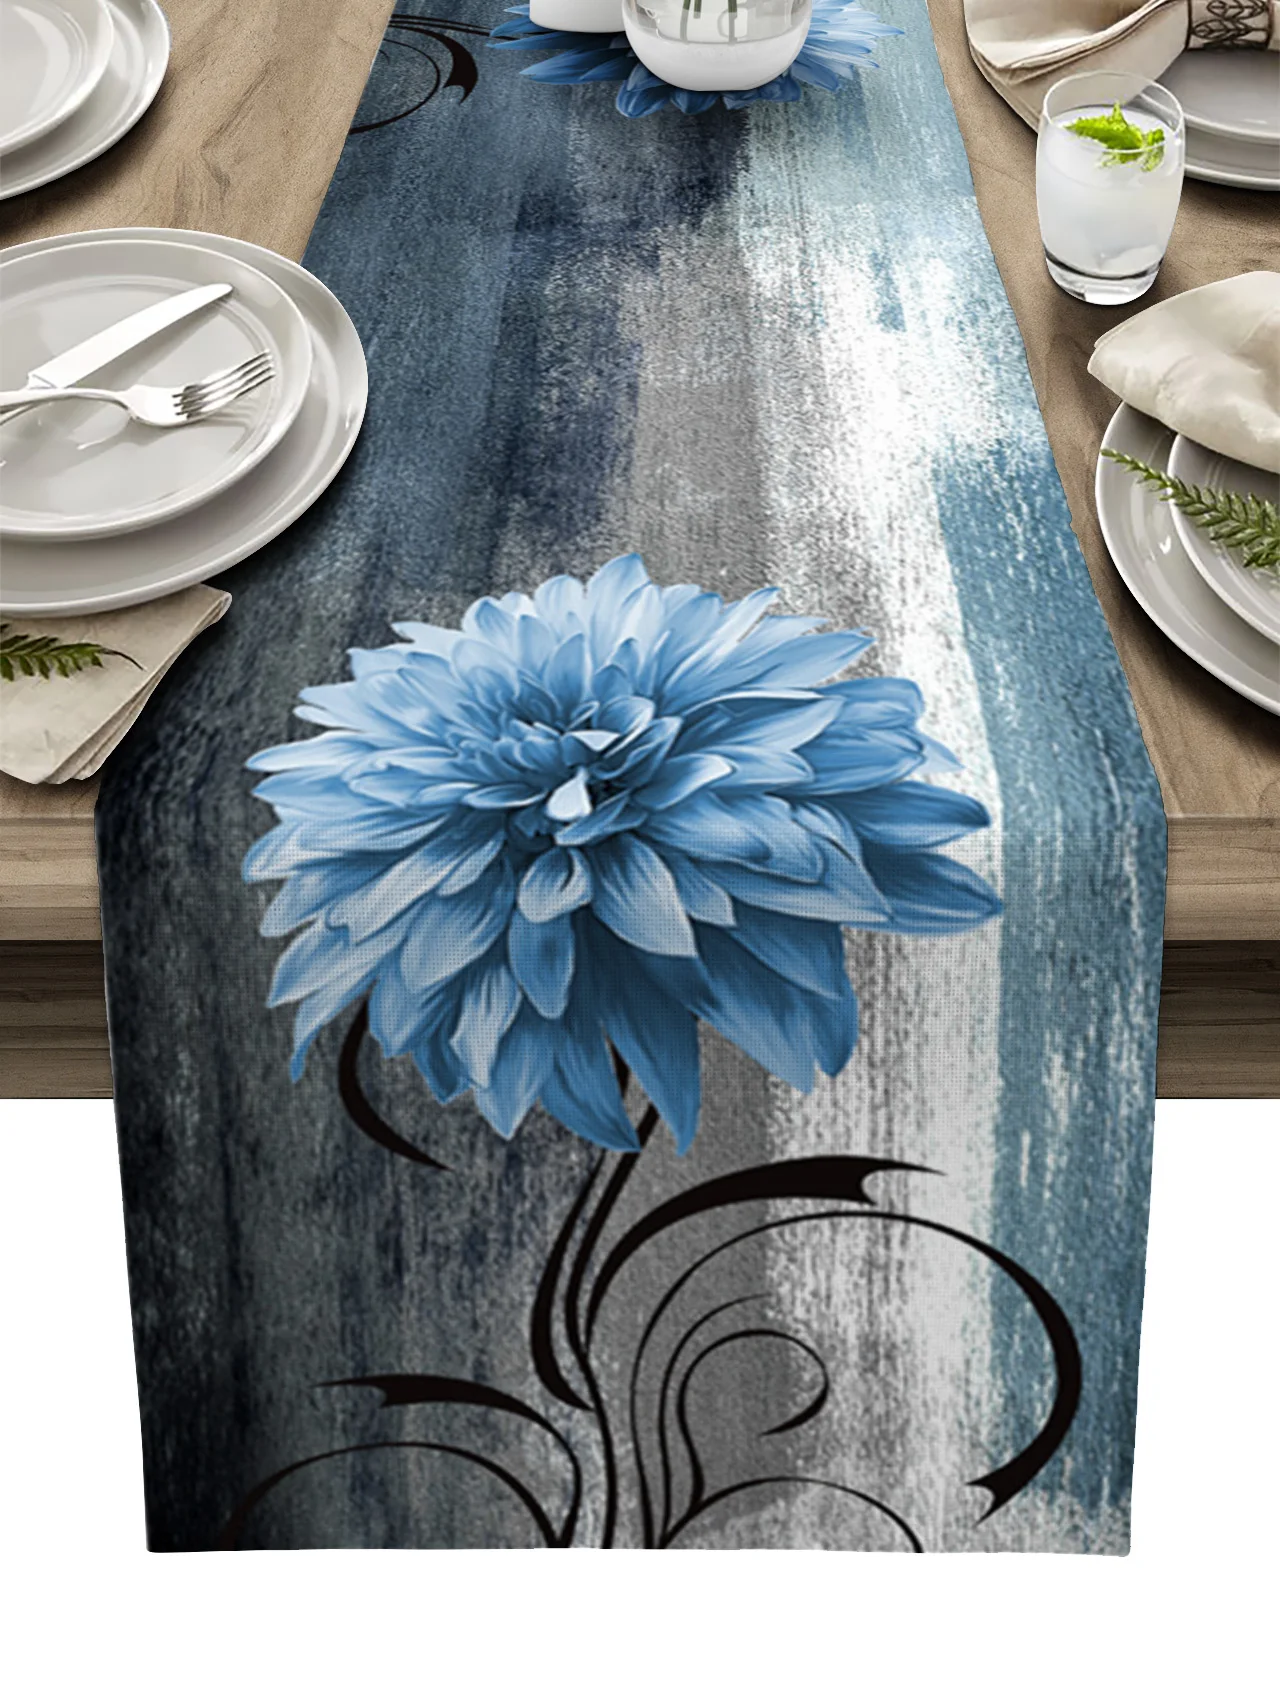 Dahlia Oil Painting Blue Table Runner Decoration Home Decor Dinner Table Decoration Table Decor